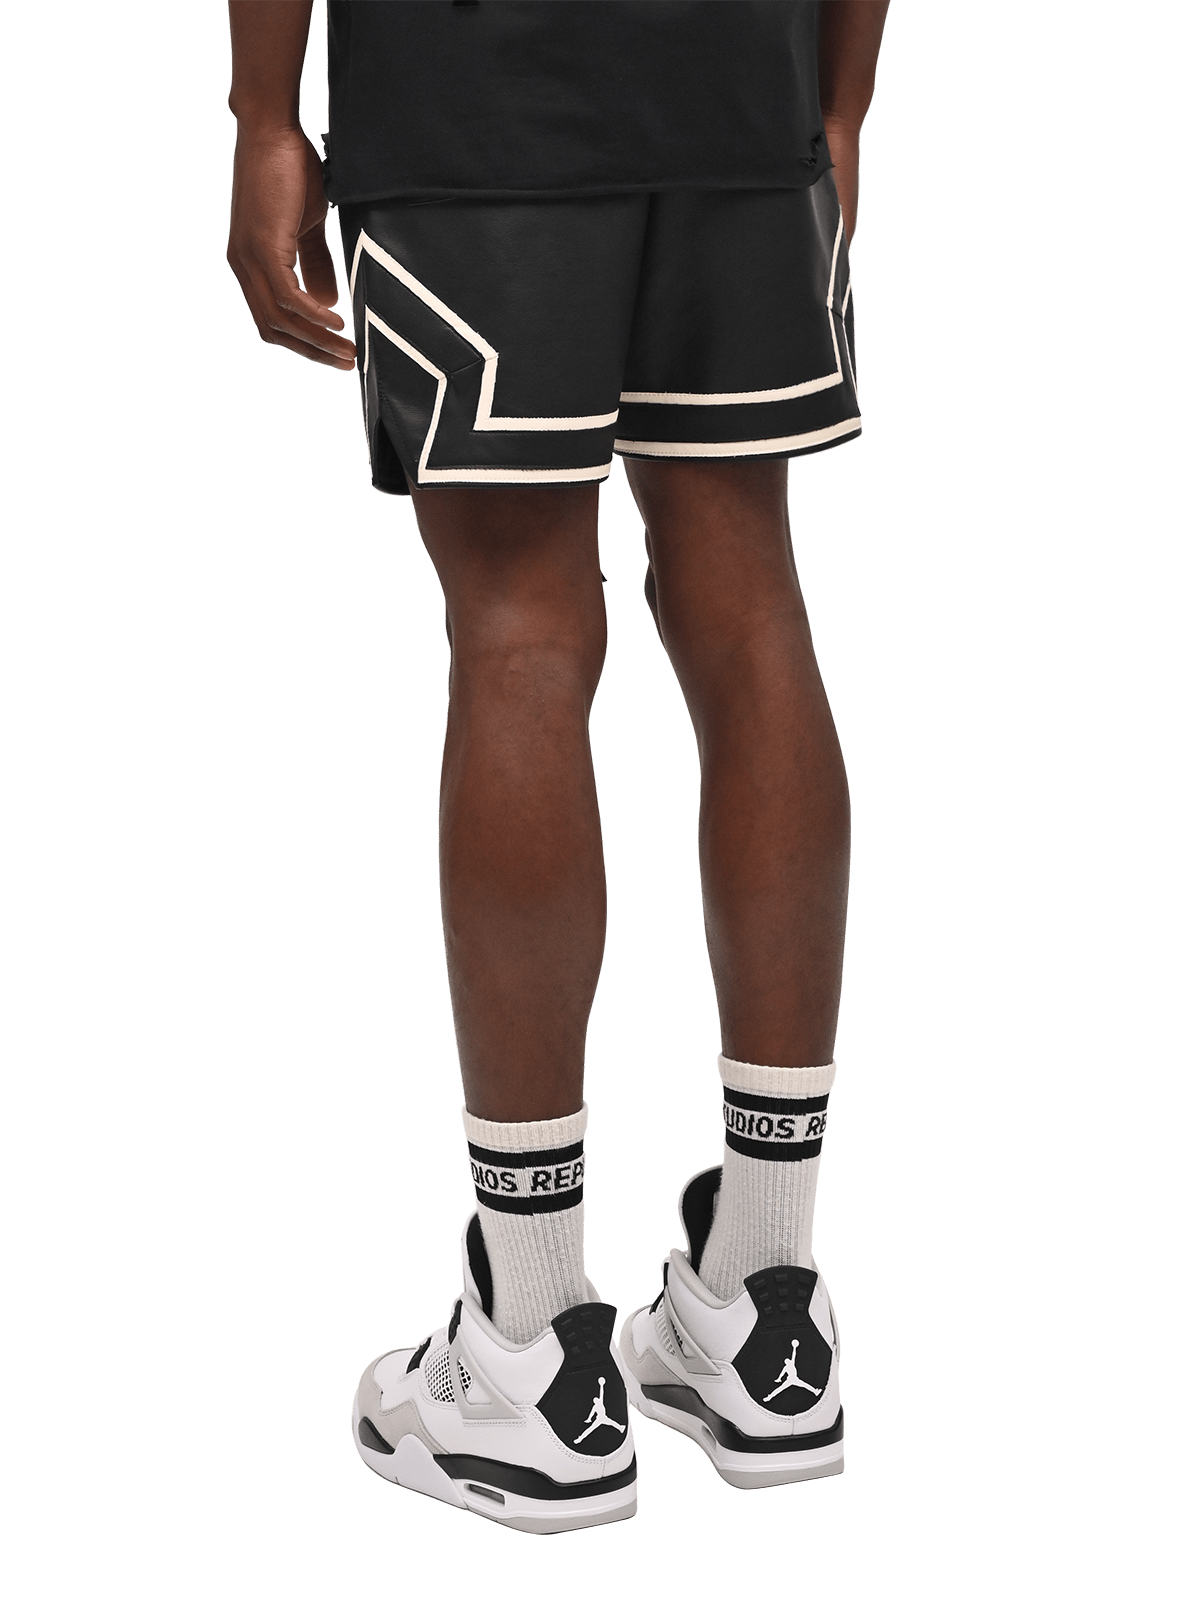 Leather Basketball Shorts - Black